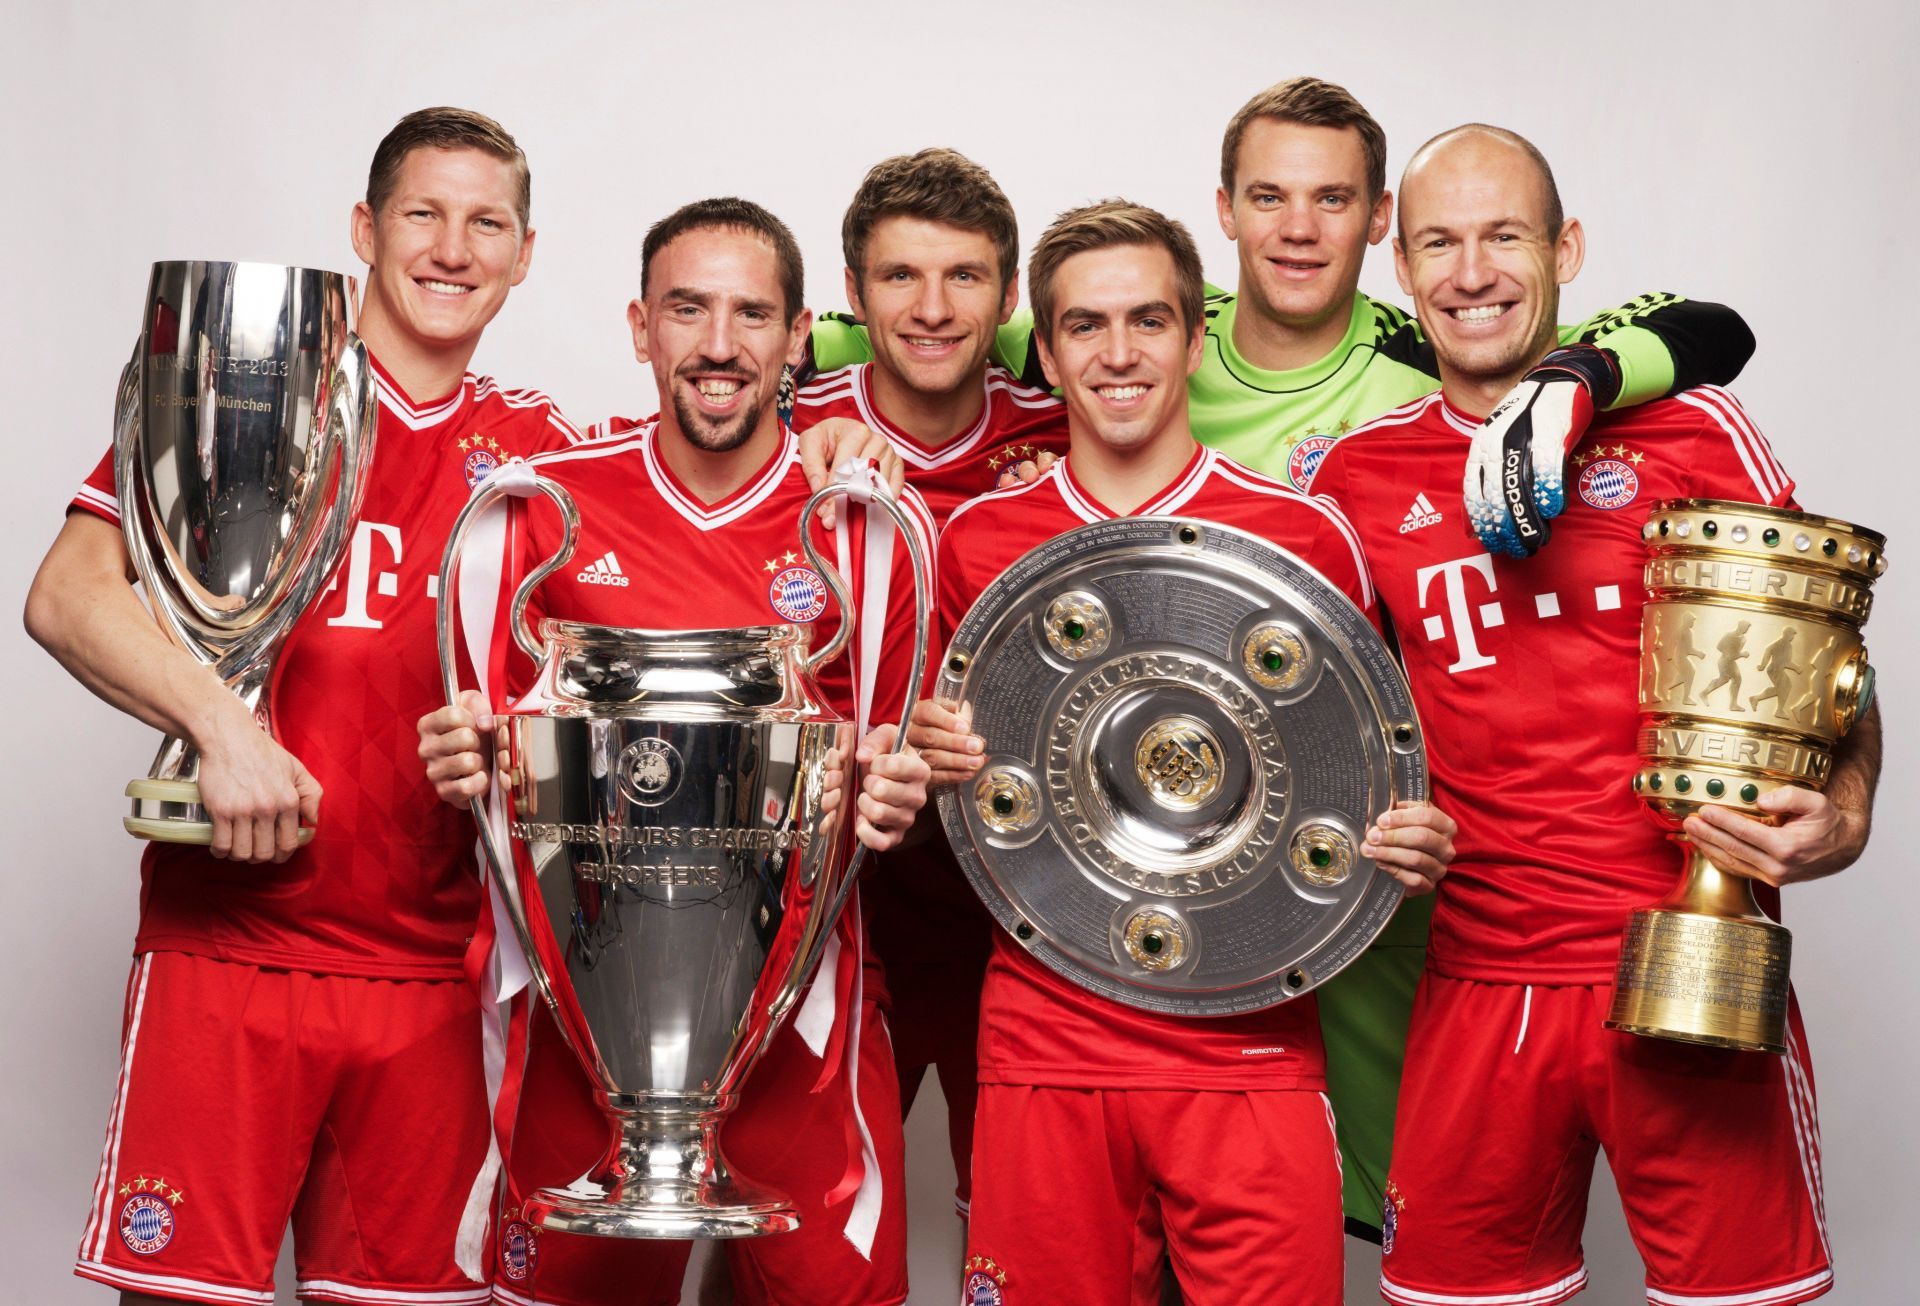 Bayern Munich 2012/13: Treble Winning Team